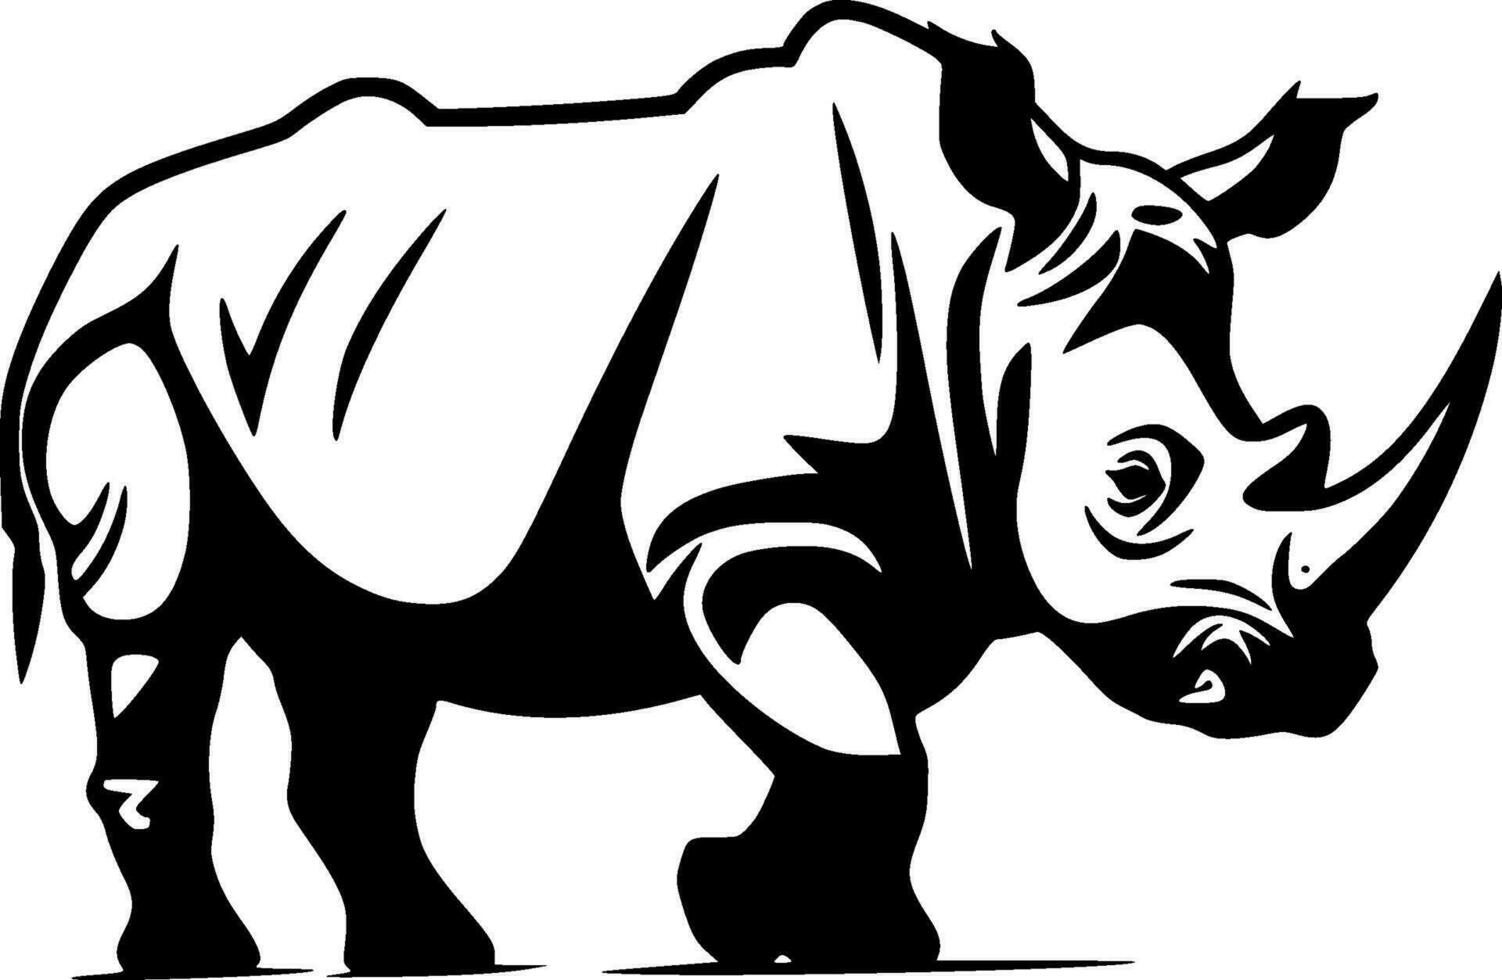 Rhinoceros, Minimalist and Simple Silhouette - Vector illustration